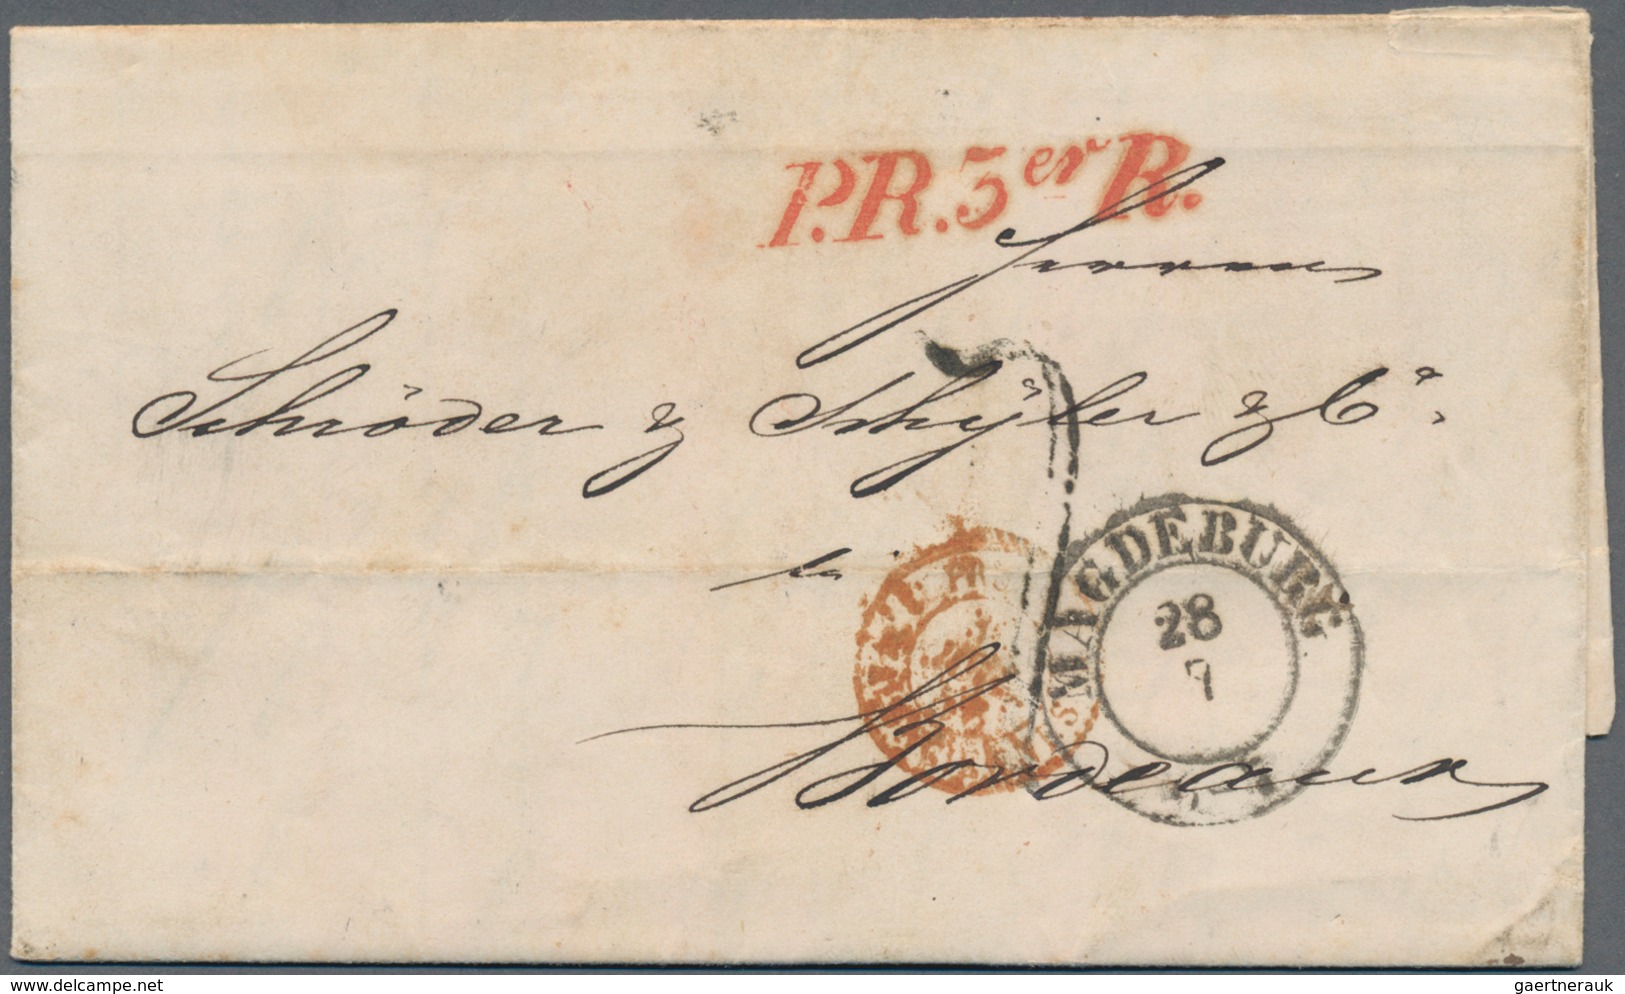 Preußen - Vorphilatelie: 1810/1870 (ca.), MAGDEBURG, Partie von ca. 58 meist markenlosen Belegen bzw